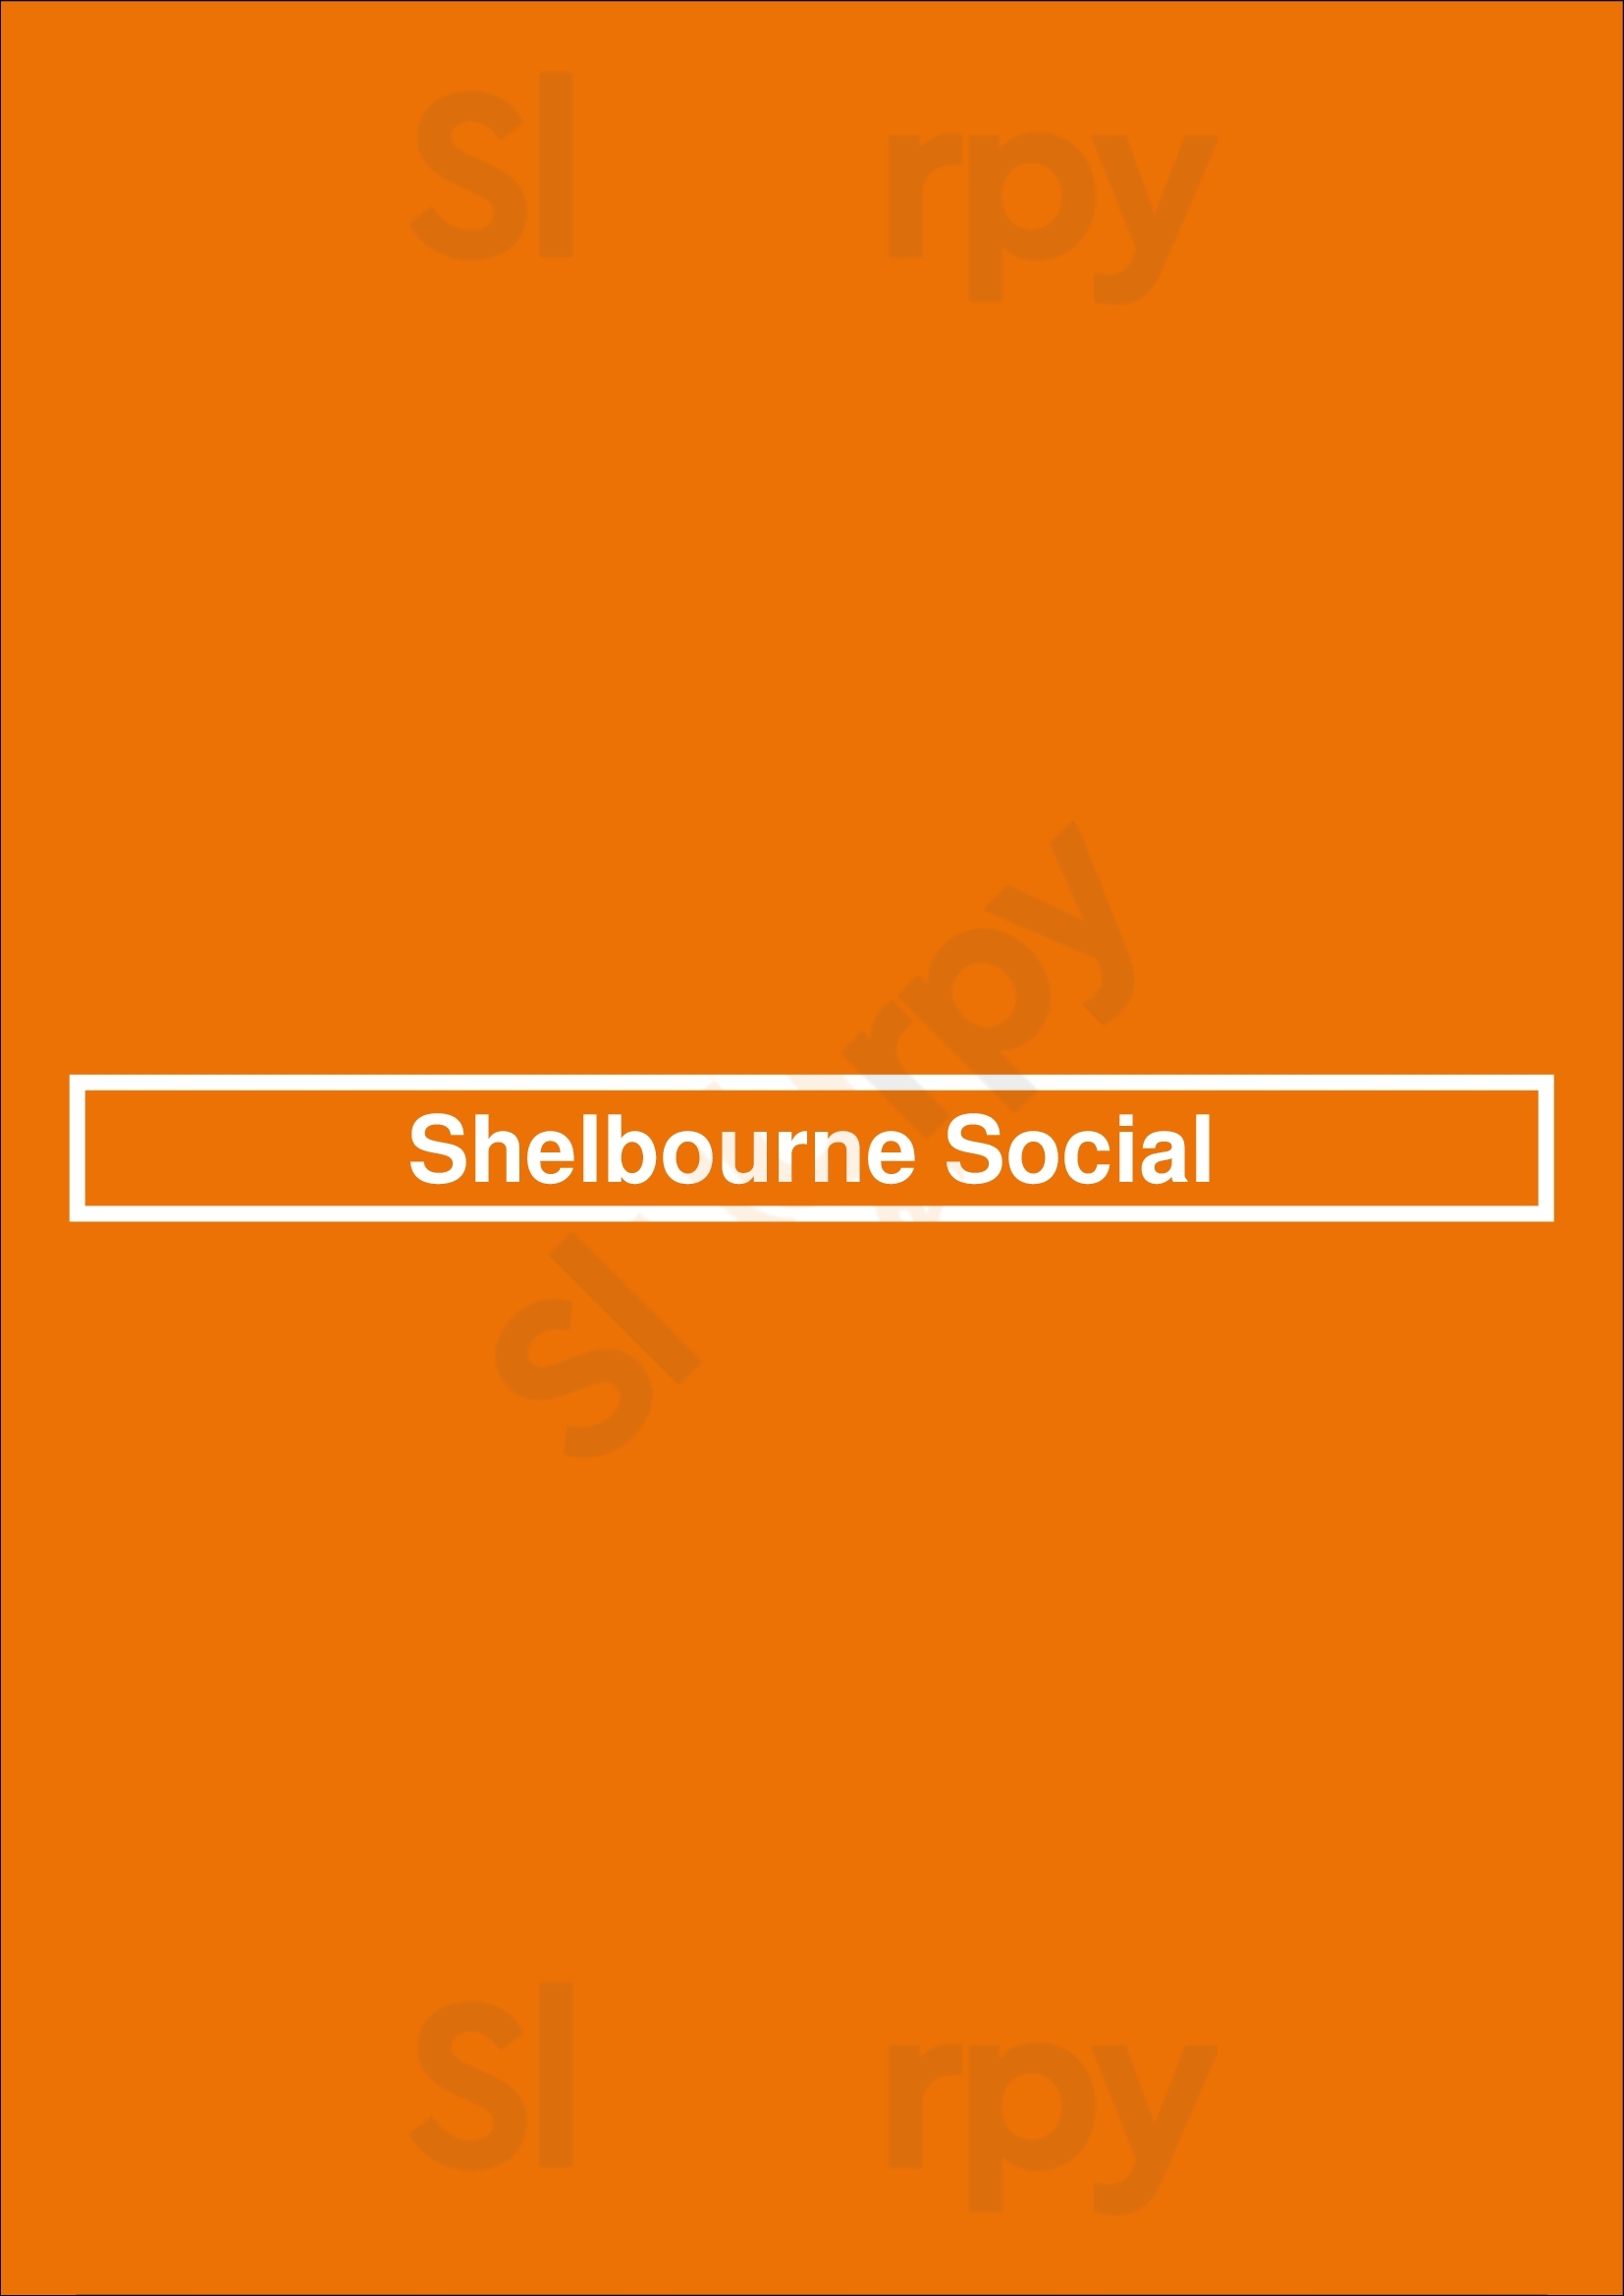 Shelbourne Social Dublin Menu - 1